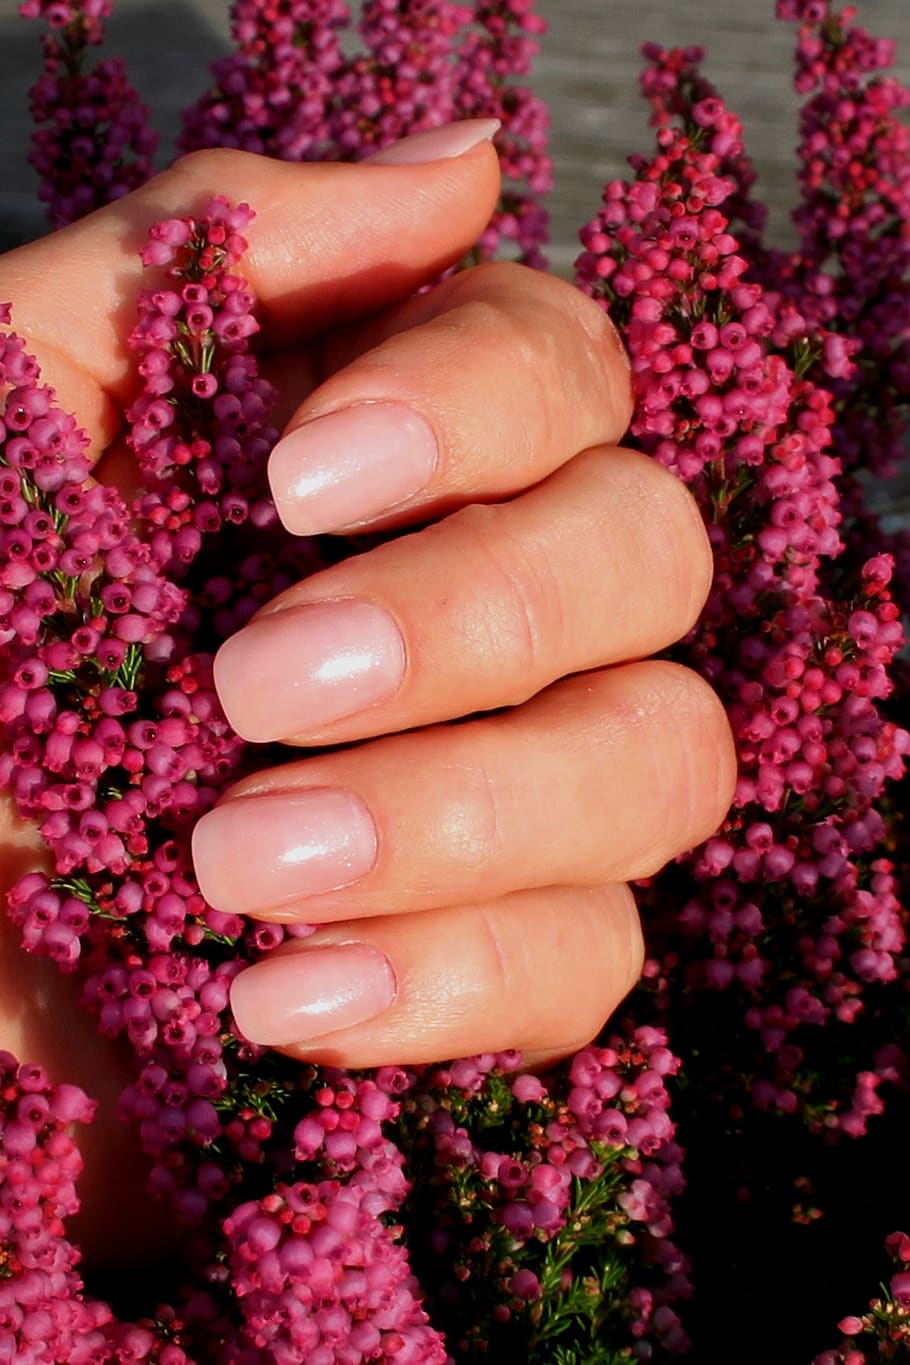 uñas, baby boomers, manicura, diseño de uñas, esmalte de uñas, Flor, planta floreciente, color rosado, mano humana, parte del cuerpo humano